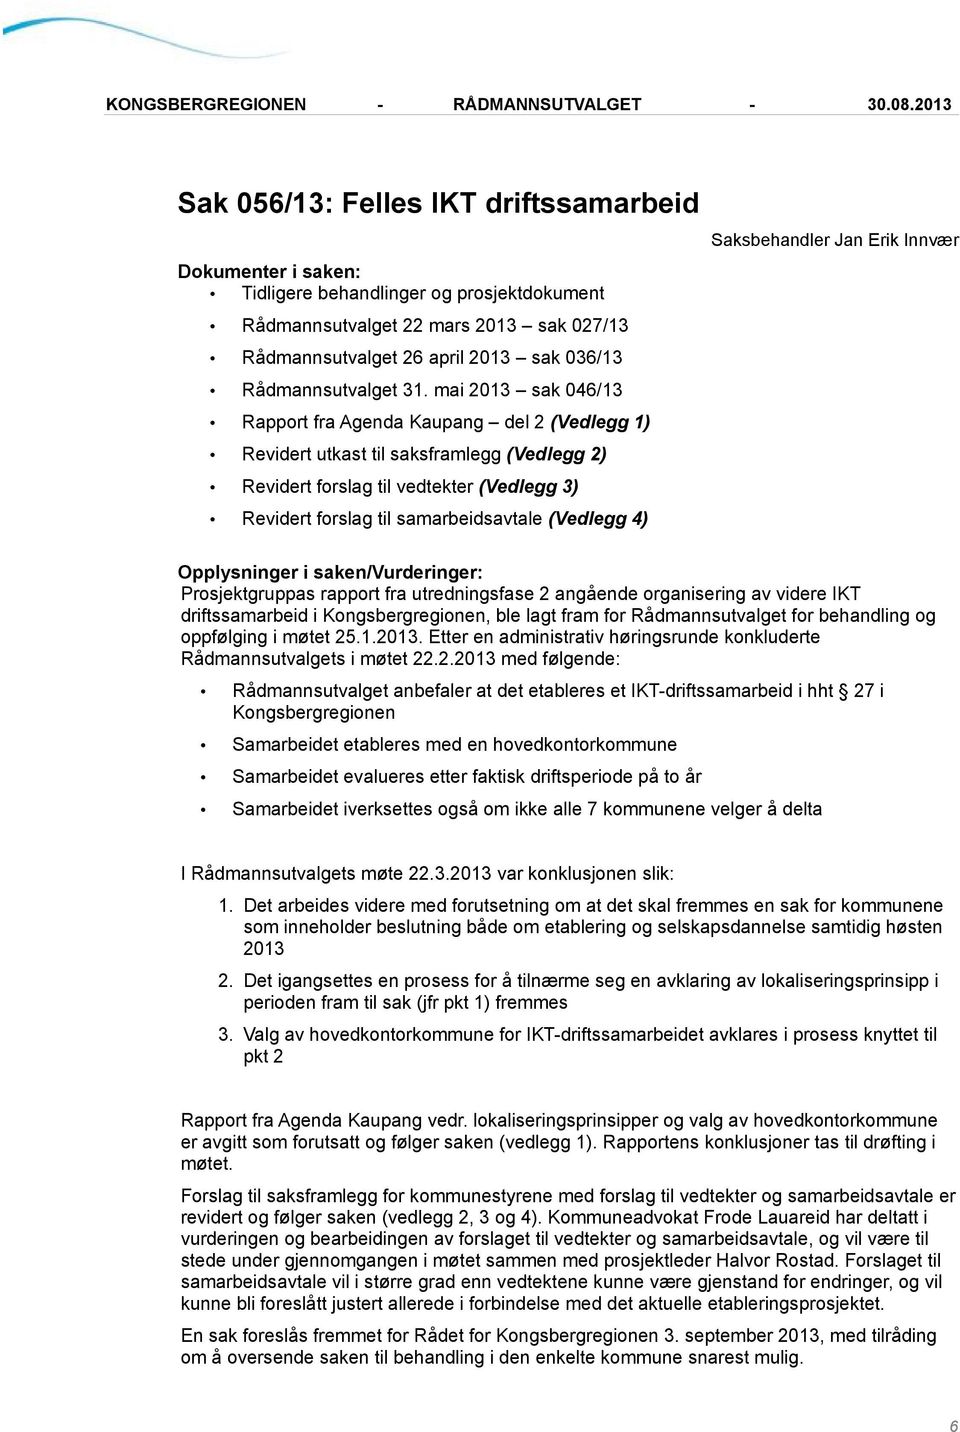 mai 2013 sak 046/13 Rapport fra Agenda Kaupang del 2 (Vedlegg 1) Revidert utkast til saksframlegg (Vedlegg 2) Revidert forslag til vedtekter (Vedlegg 3) Revidert forslag til samarbeidsavtale (Vedlegg